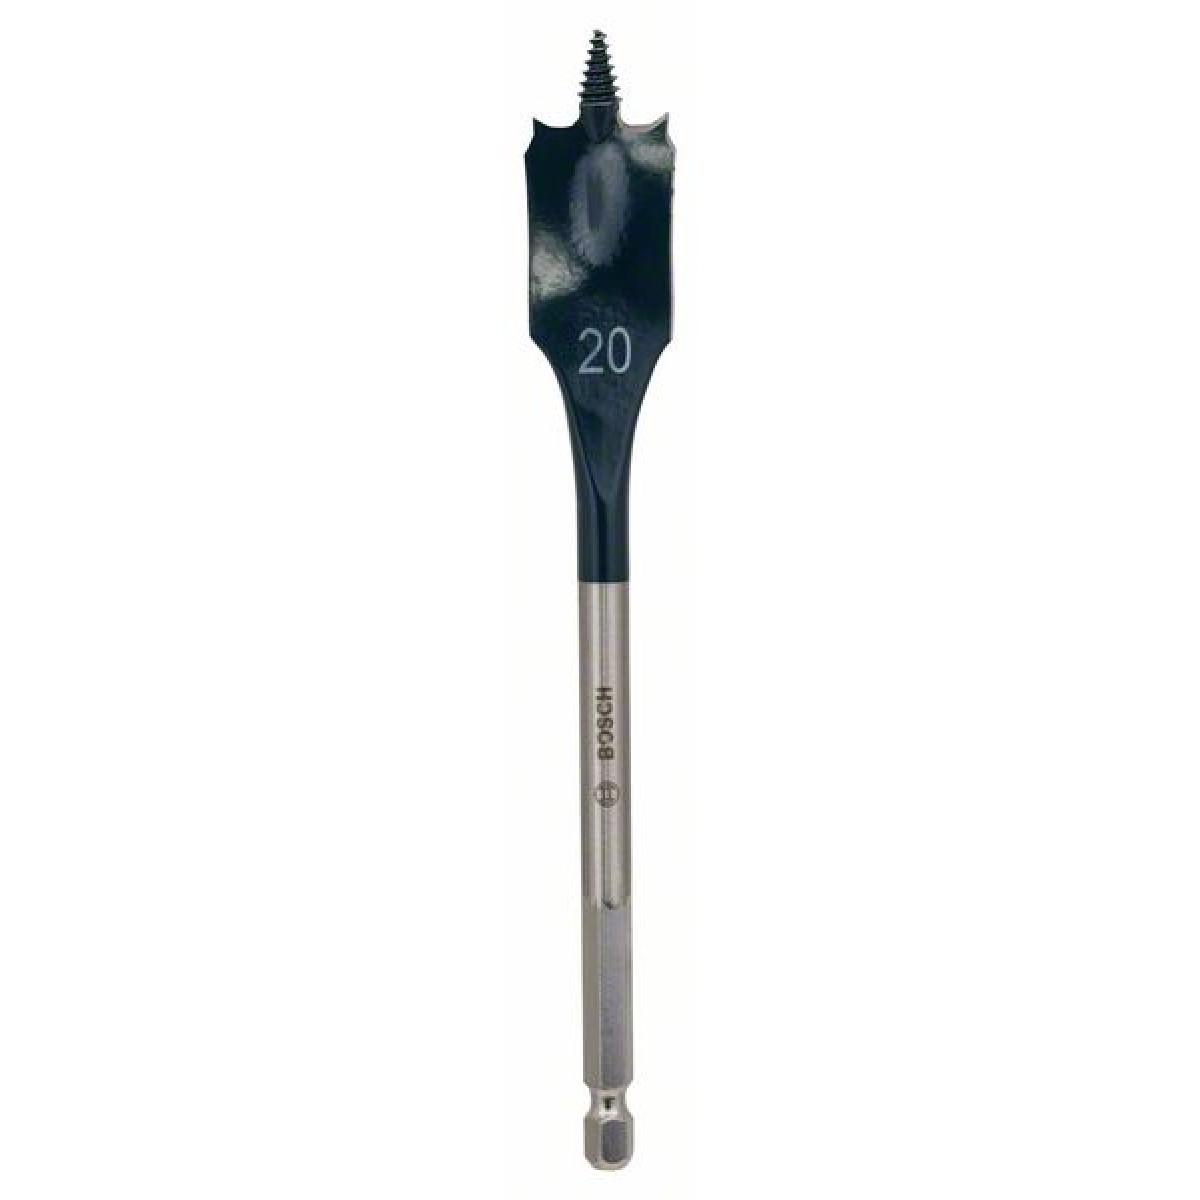 Hex shank Self cut spade bit - 20mm x 116mm x 152mm